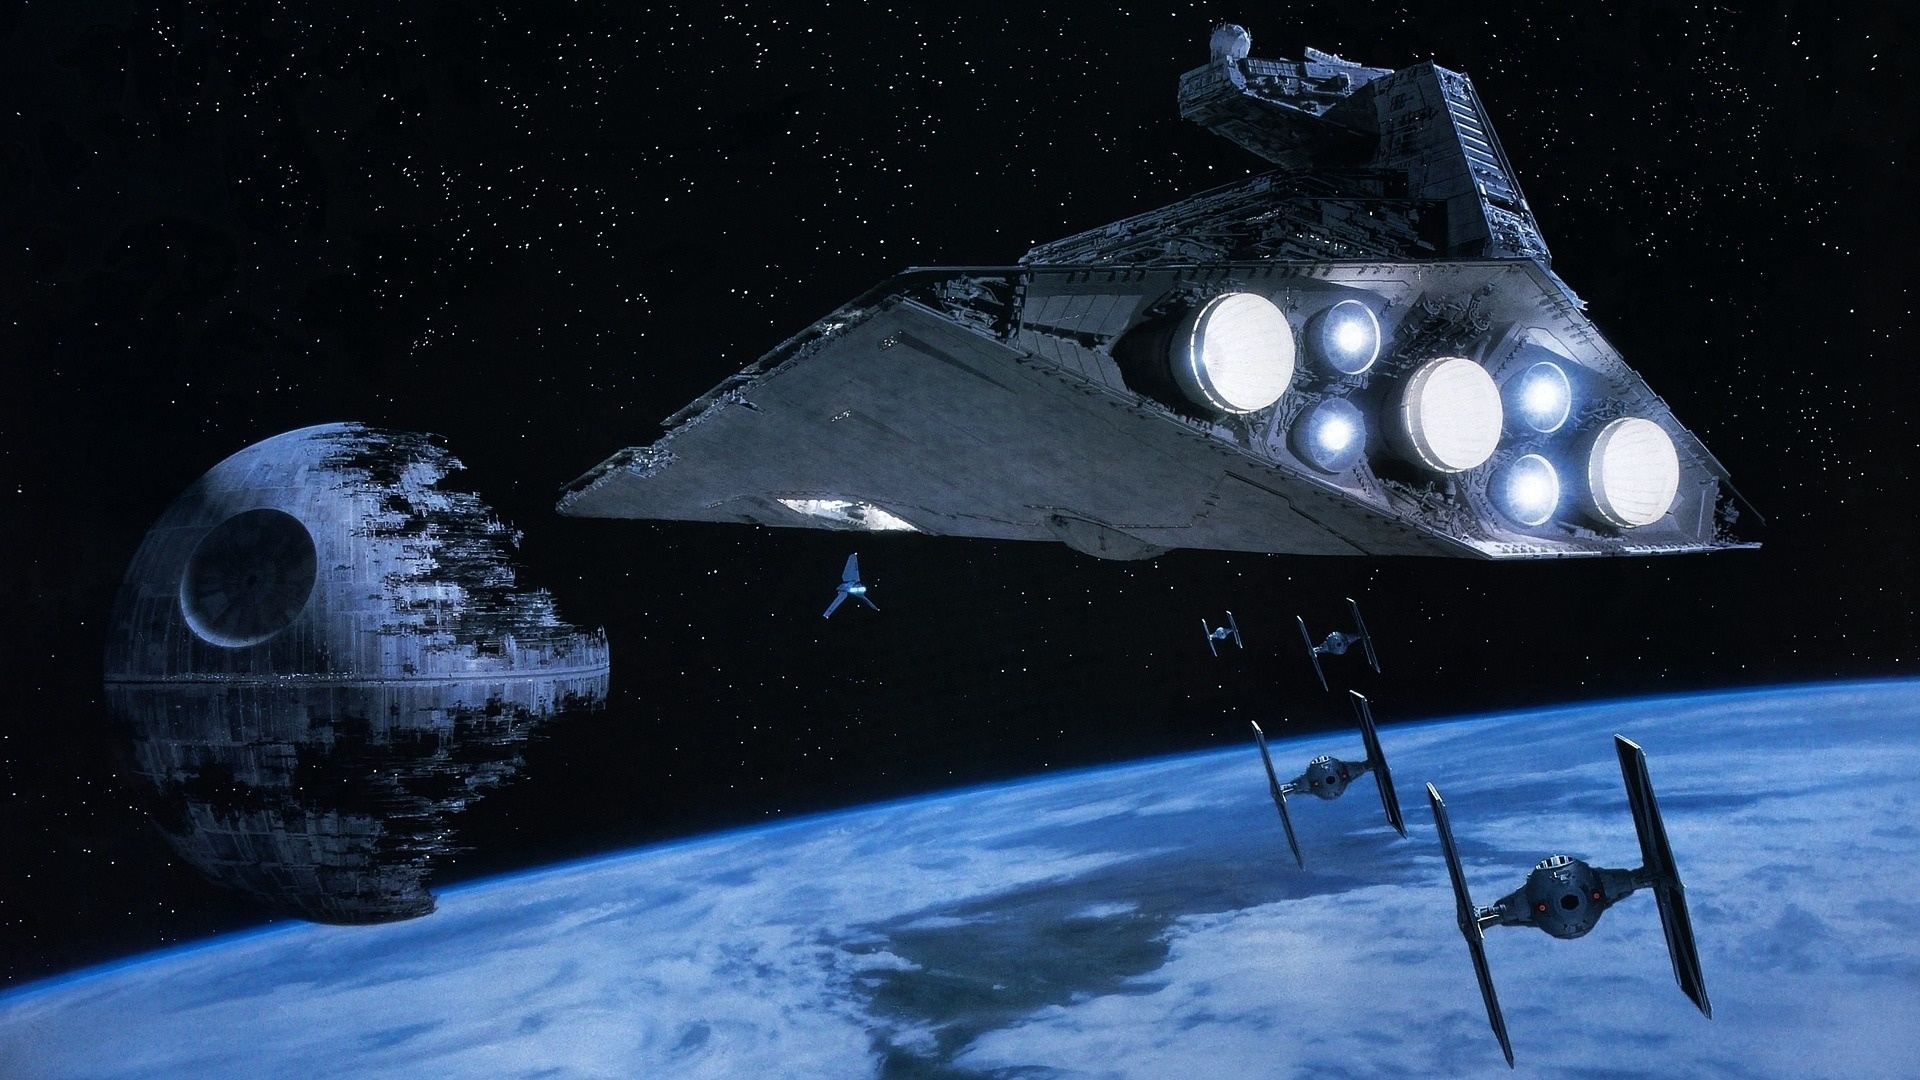 Wallpaper Star Wars Spaceship Imperial Destroyer Death